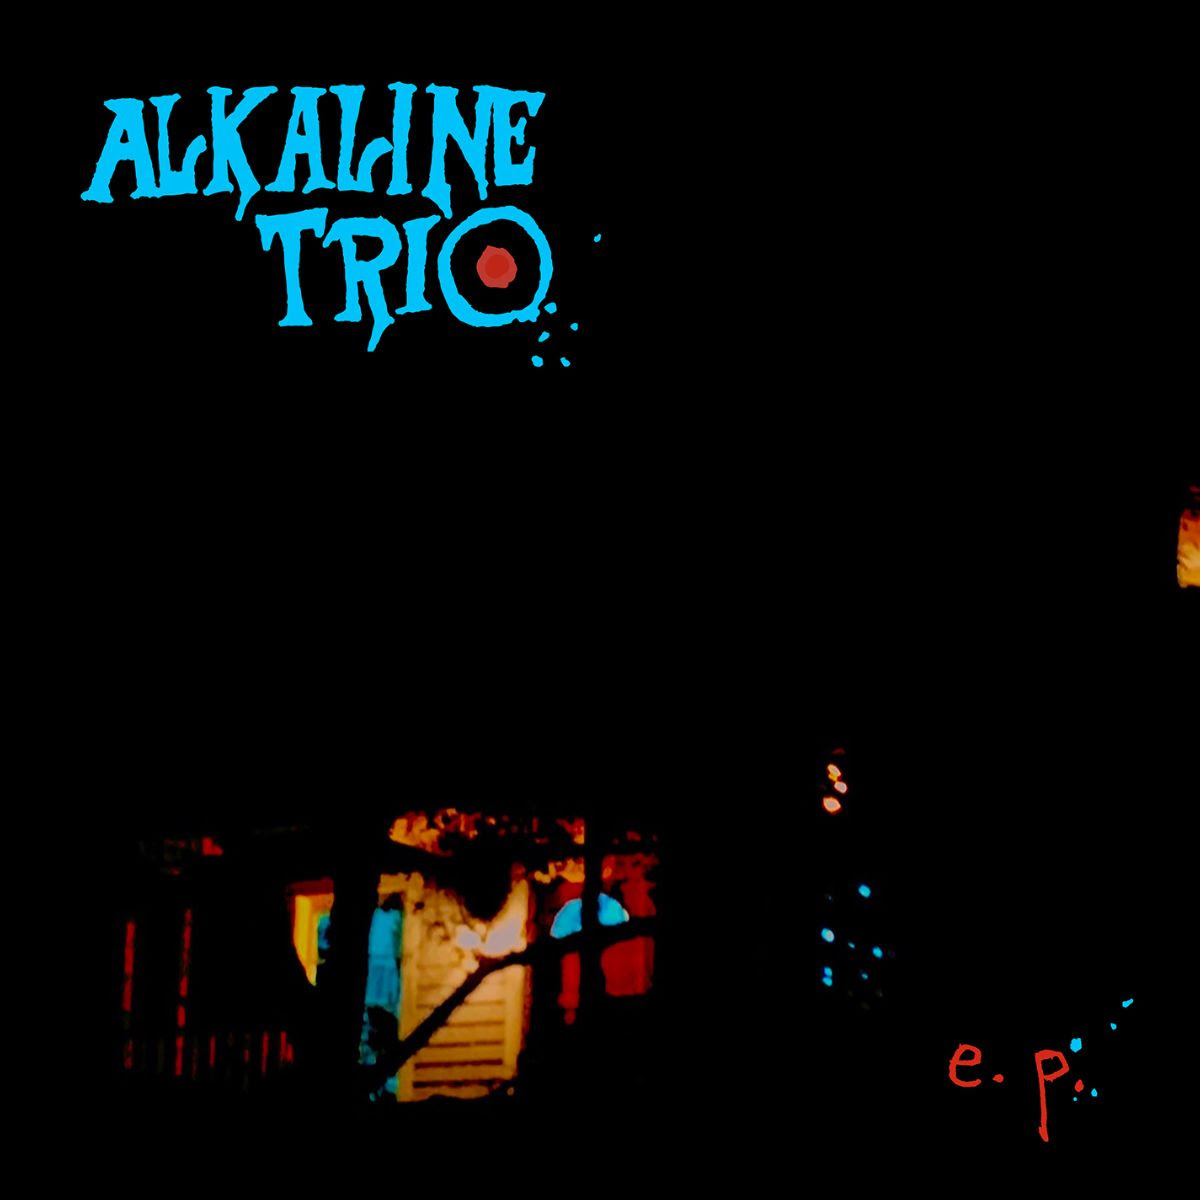 fireside bowl aklaline trio